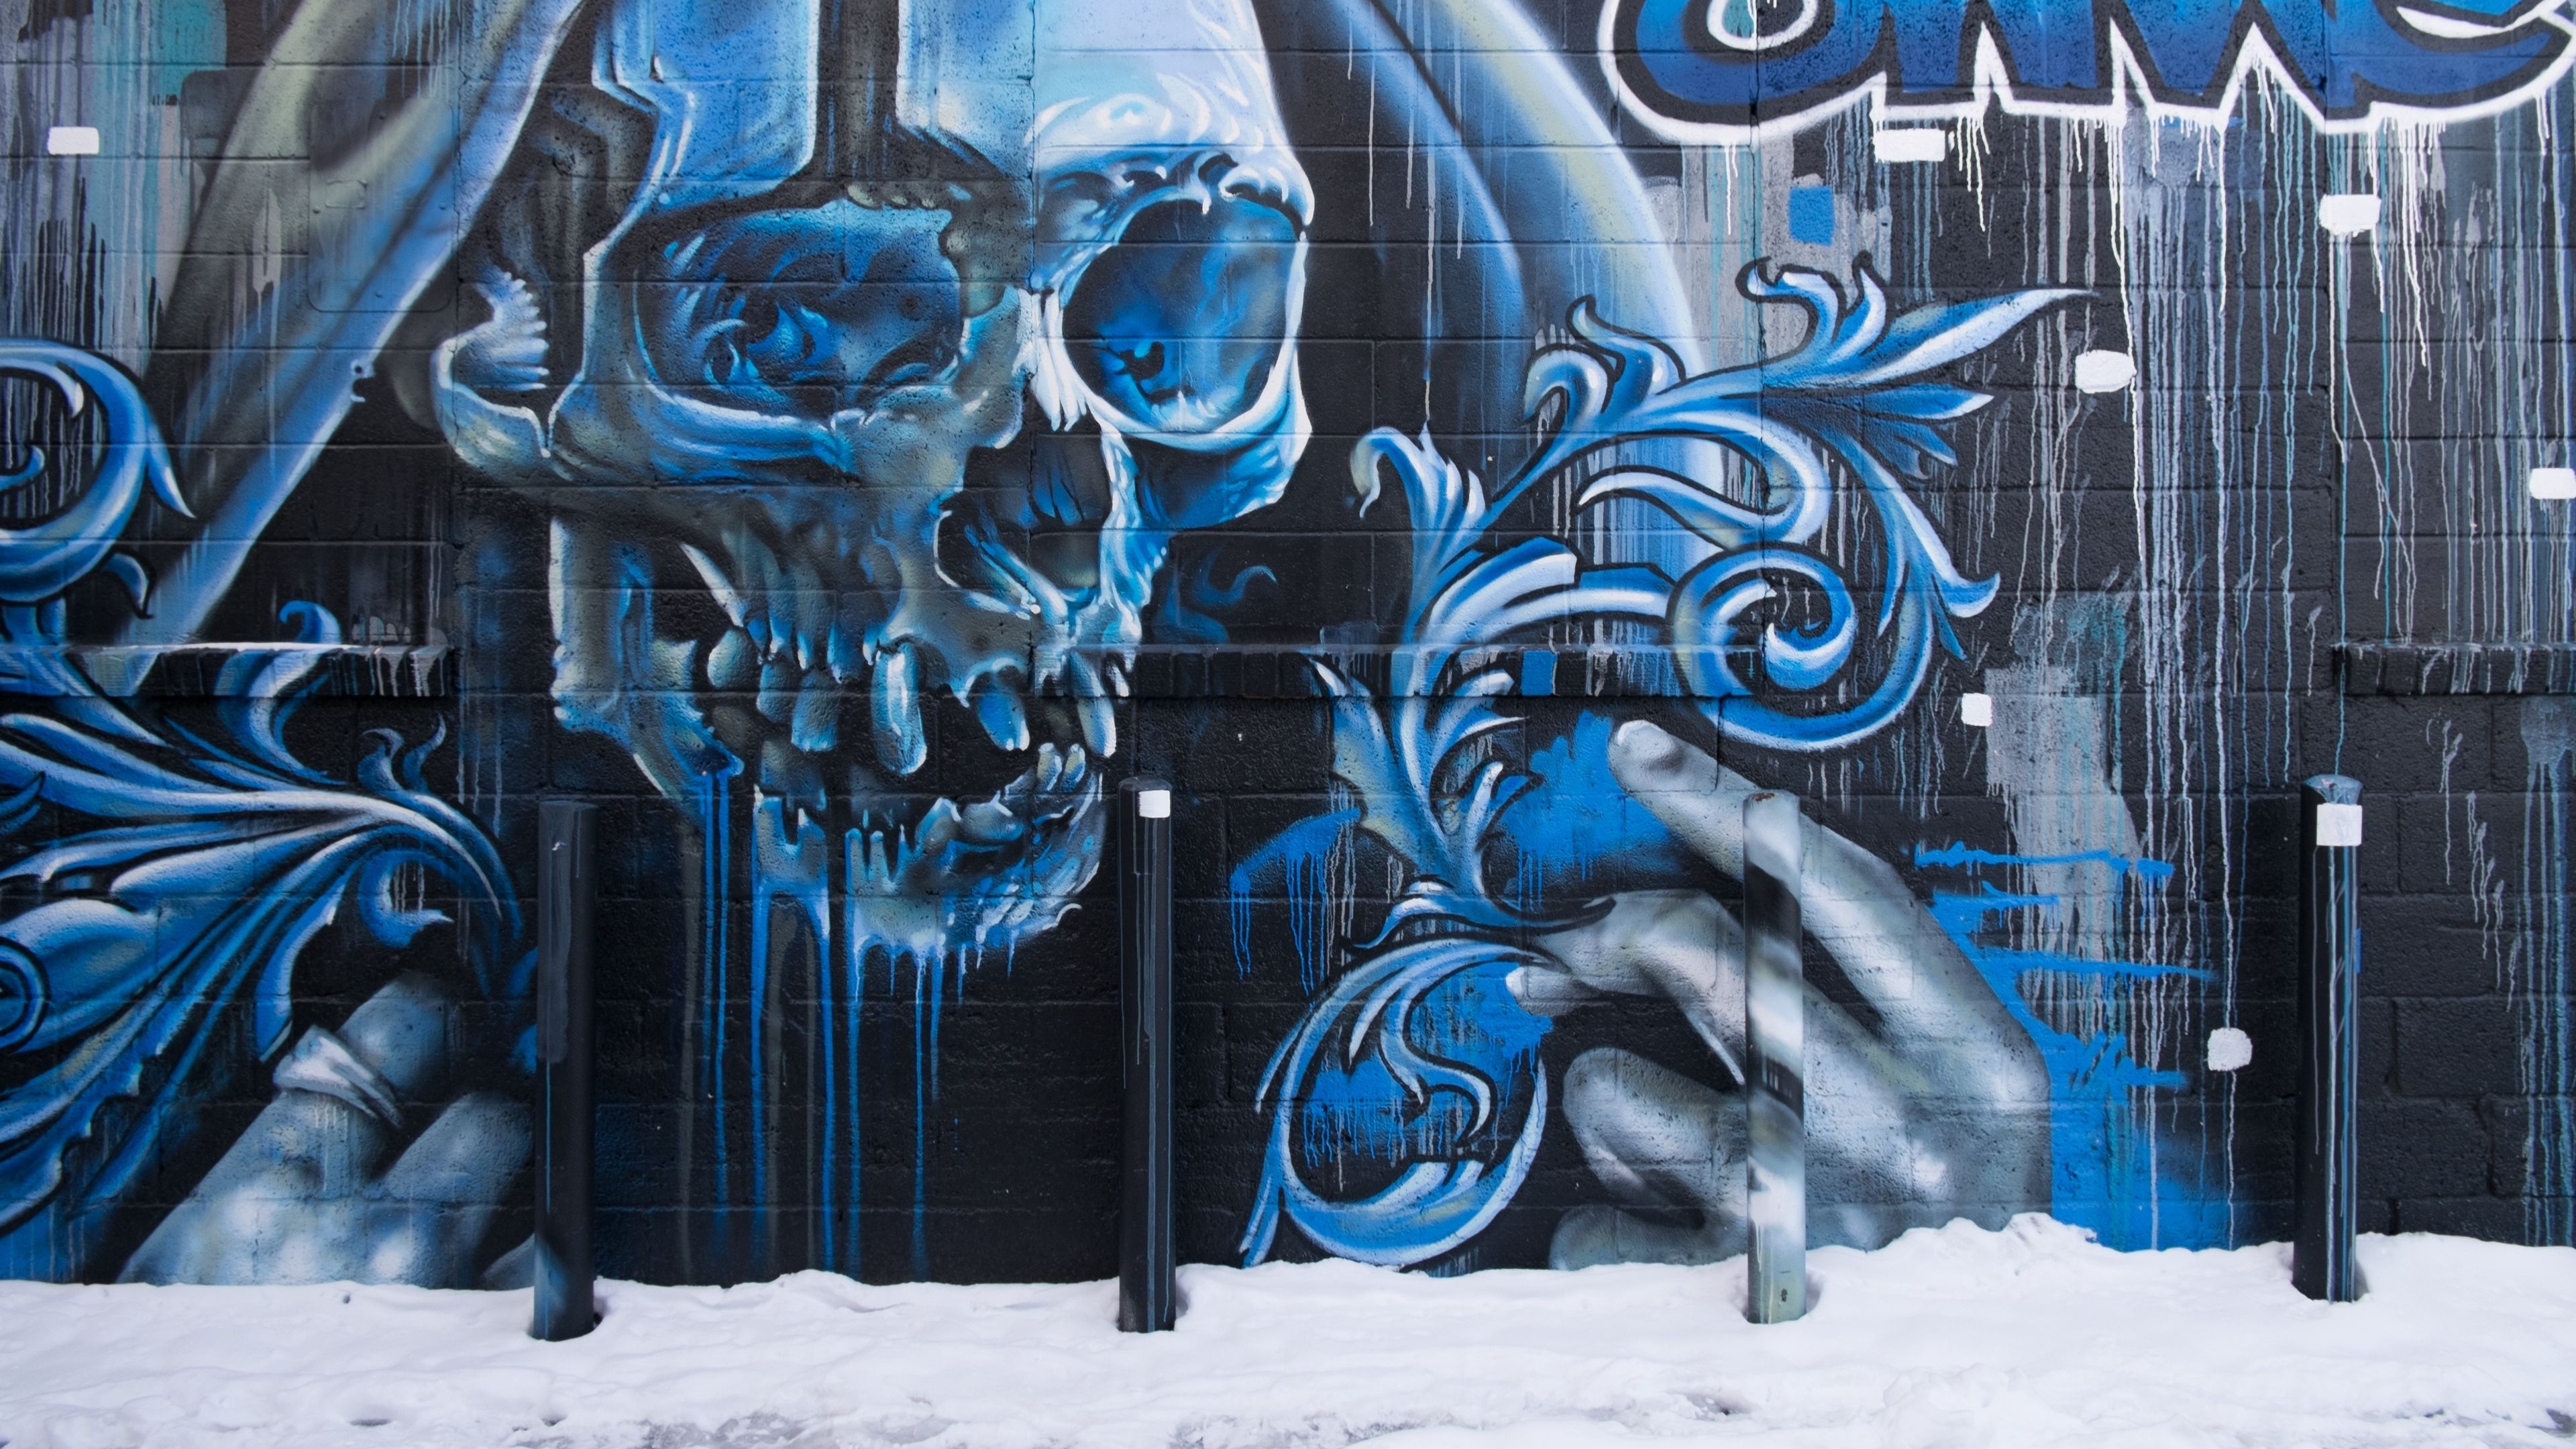 Skull Graffiti, Street Art Wallpaper, 3840x2160 4K Desktop